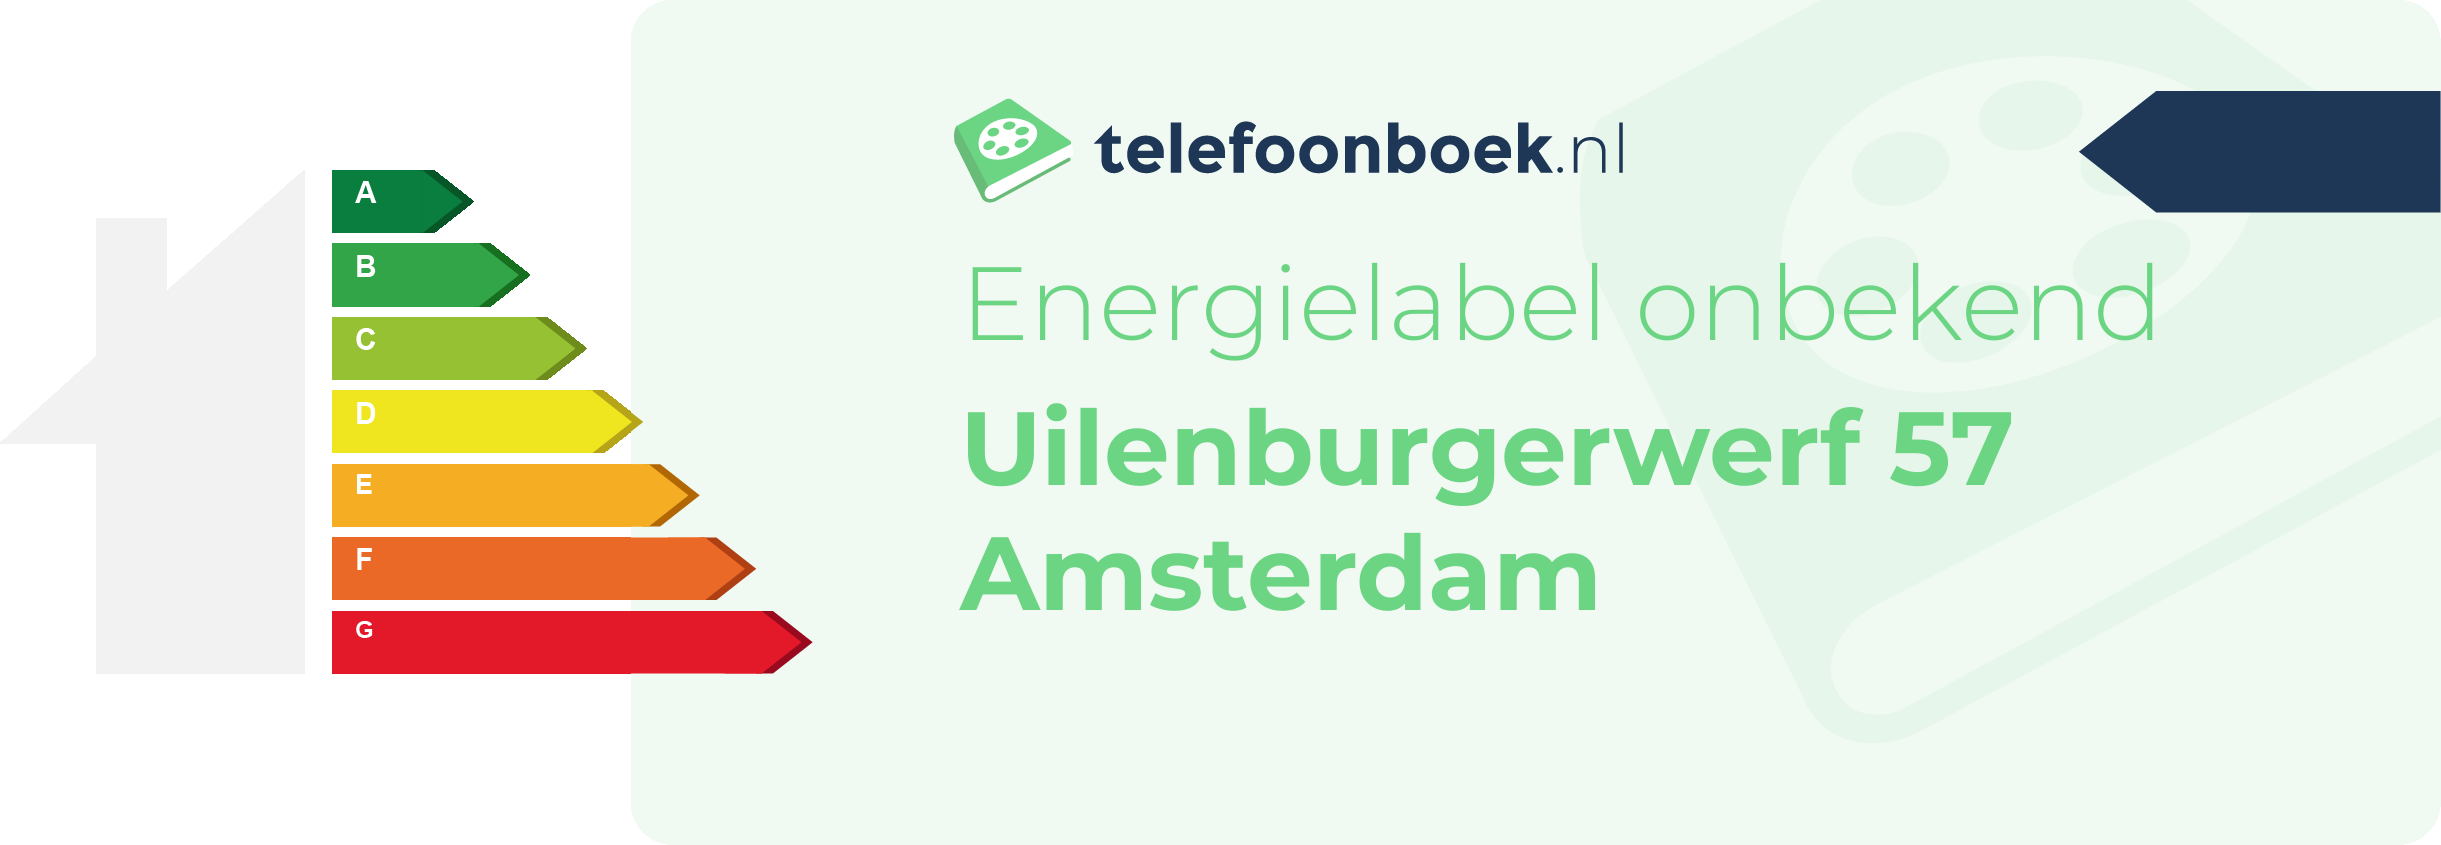 Energielabel Uilenburgerwerf 57 Amsterdam